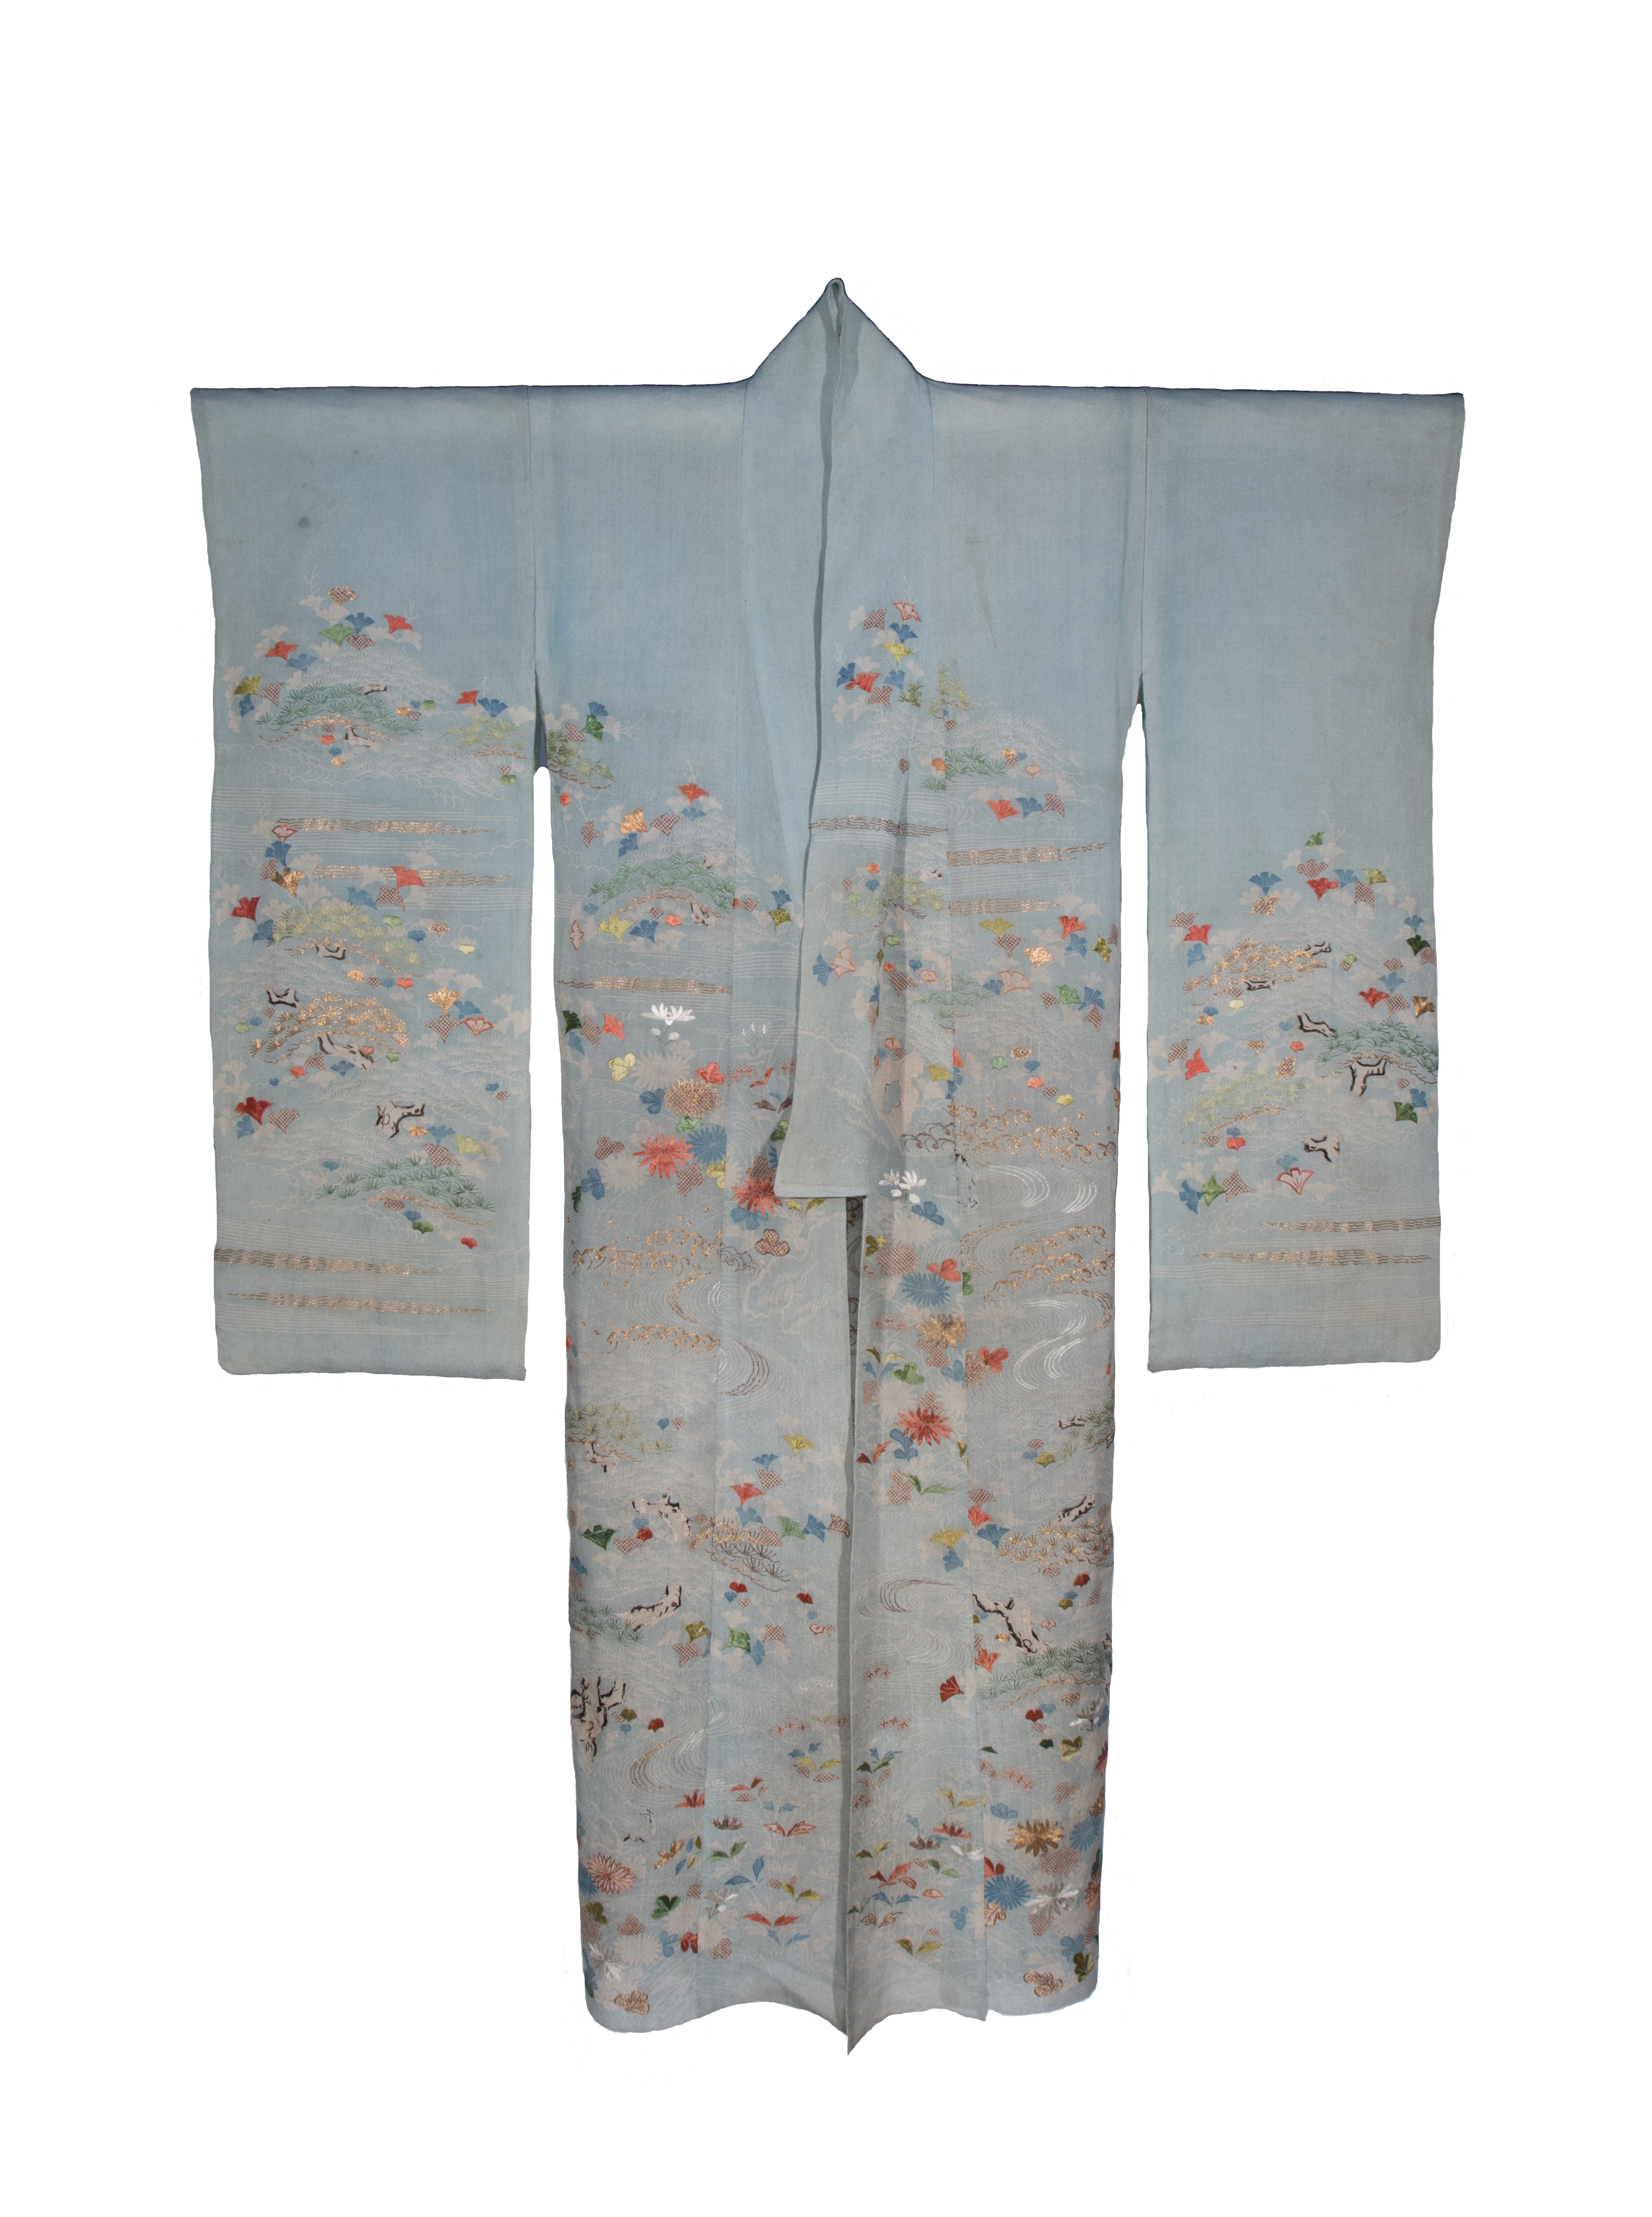 paesaggio fantastico (abito femminile, elemento d'insieme) - manifattura giapponese (fine/ metà XVIII-XIX)